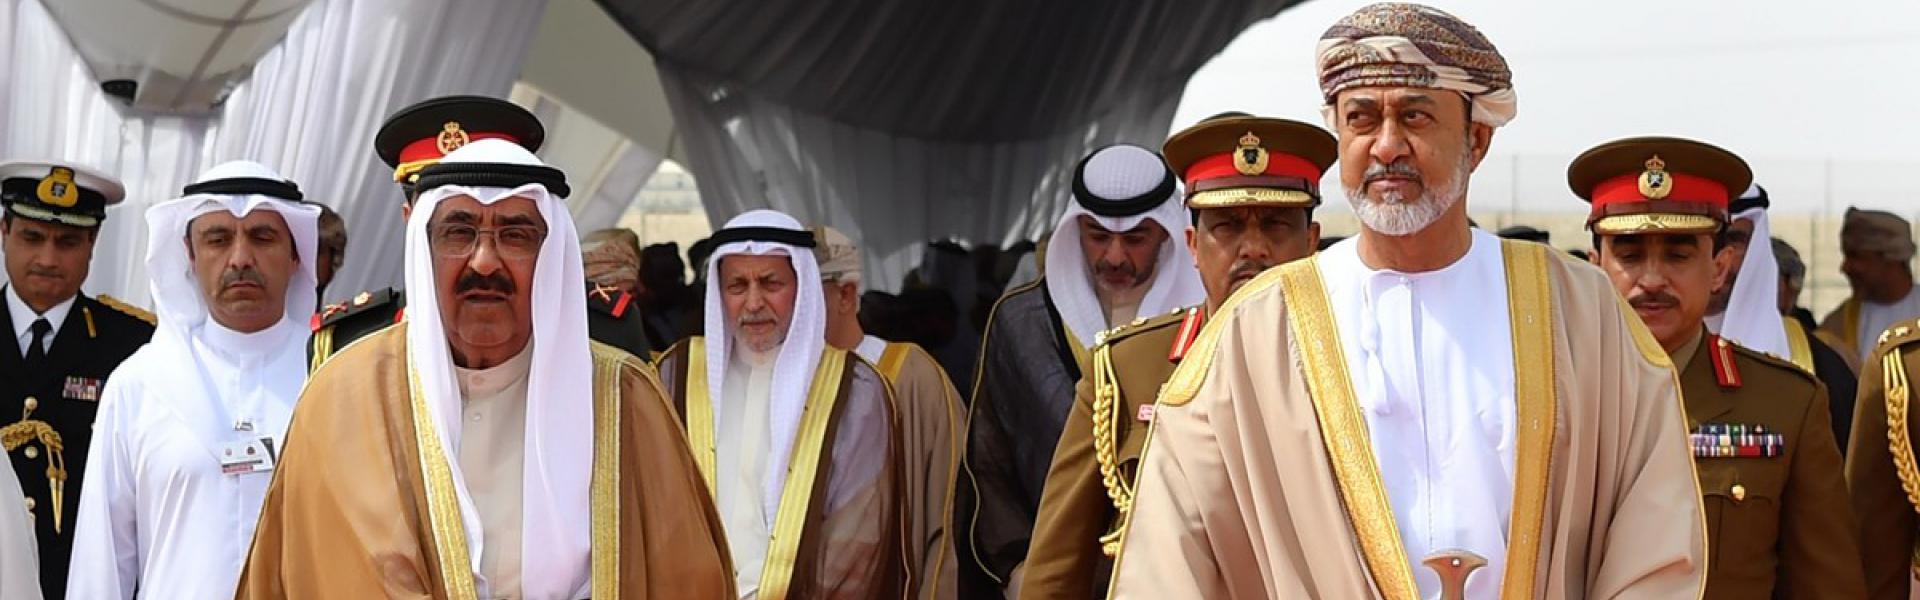 السلطان هيثم بن طارق يقوم بأول زيارة دولة للكويت